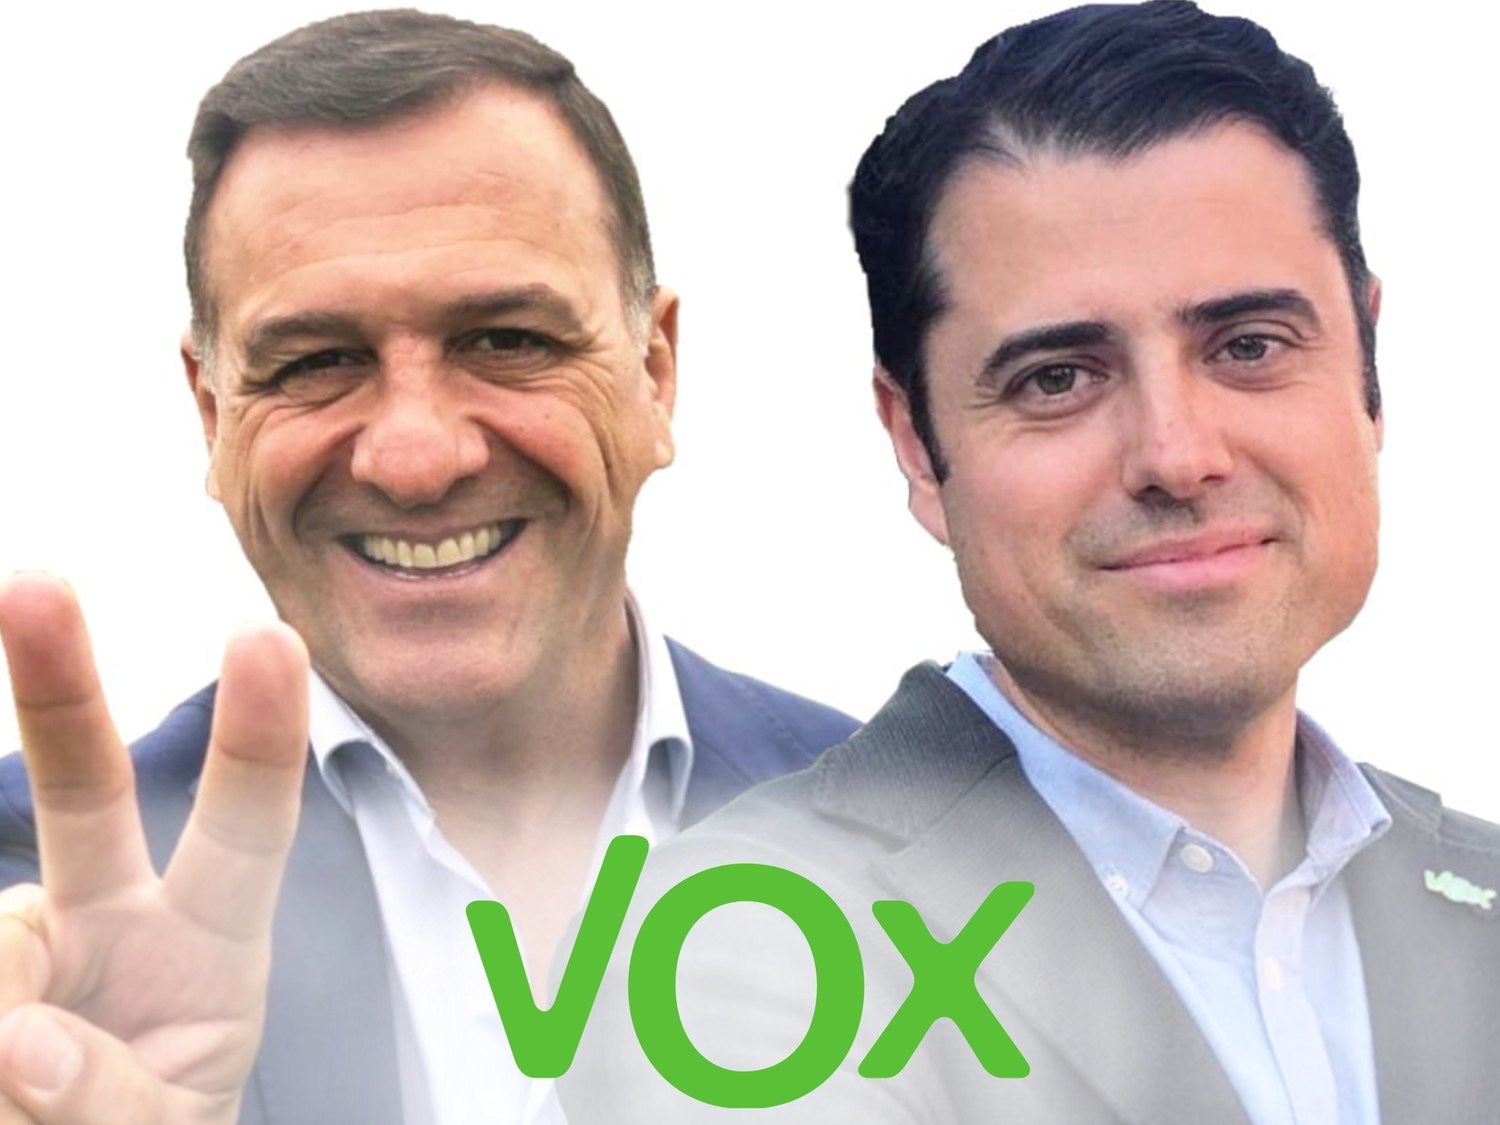 8 candidatos de VOX en Badajoz abandonan el partido al darse cuenta que es "antidemocrático"